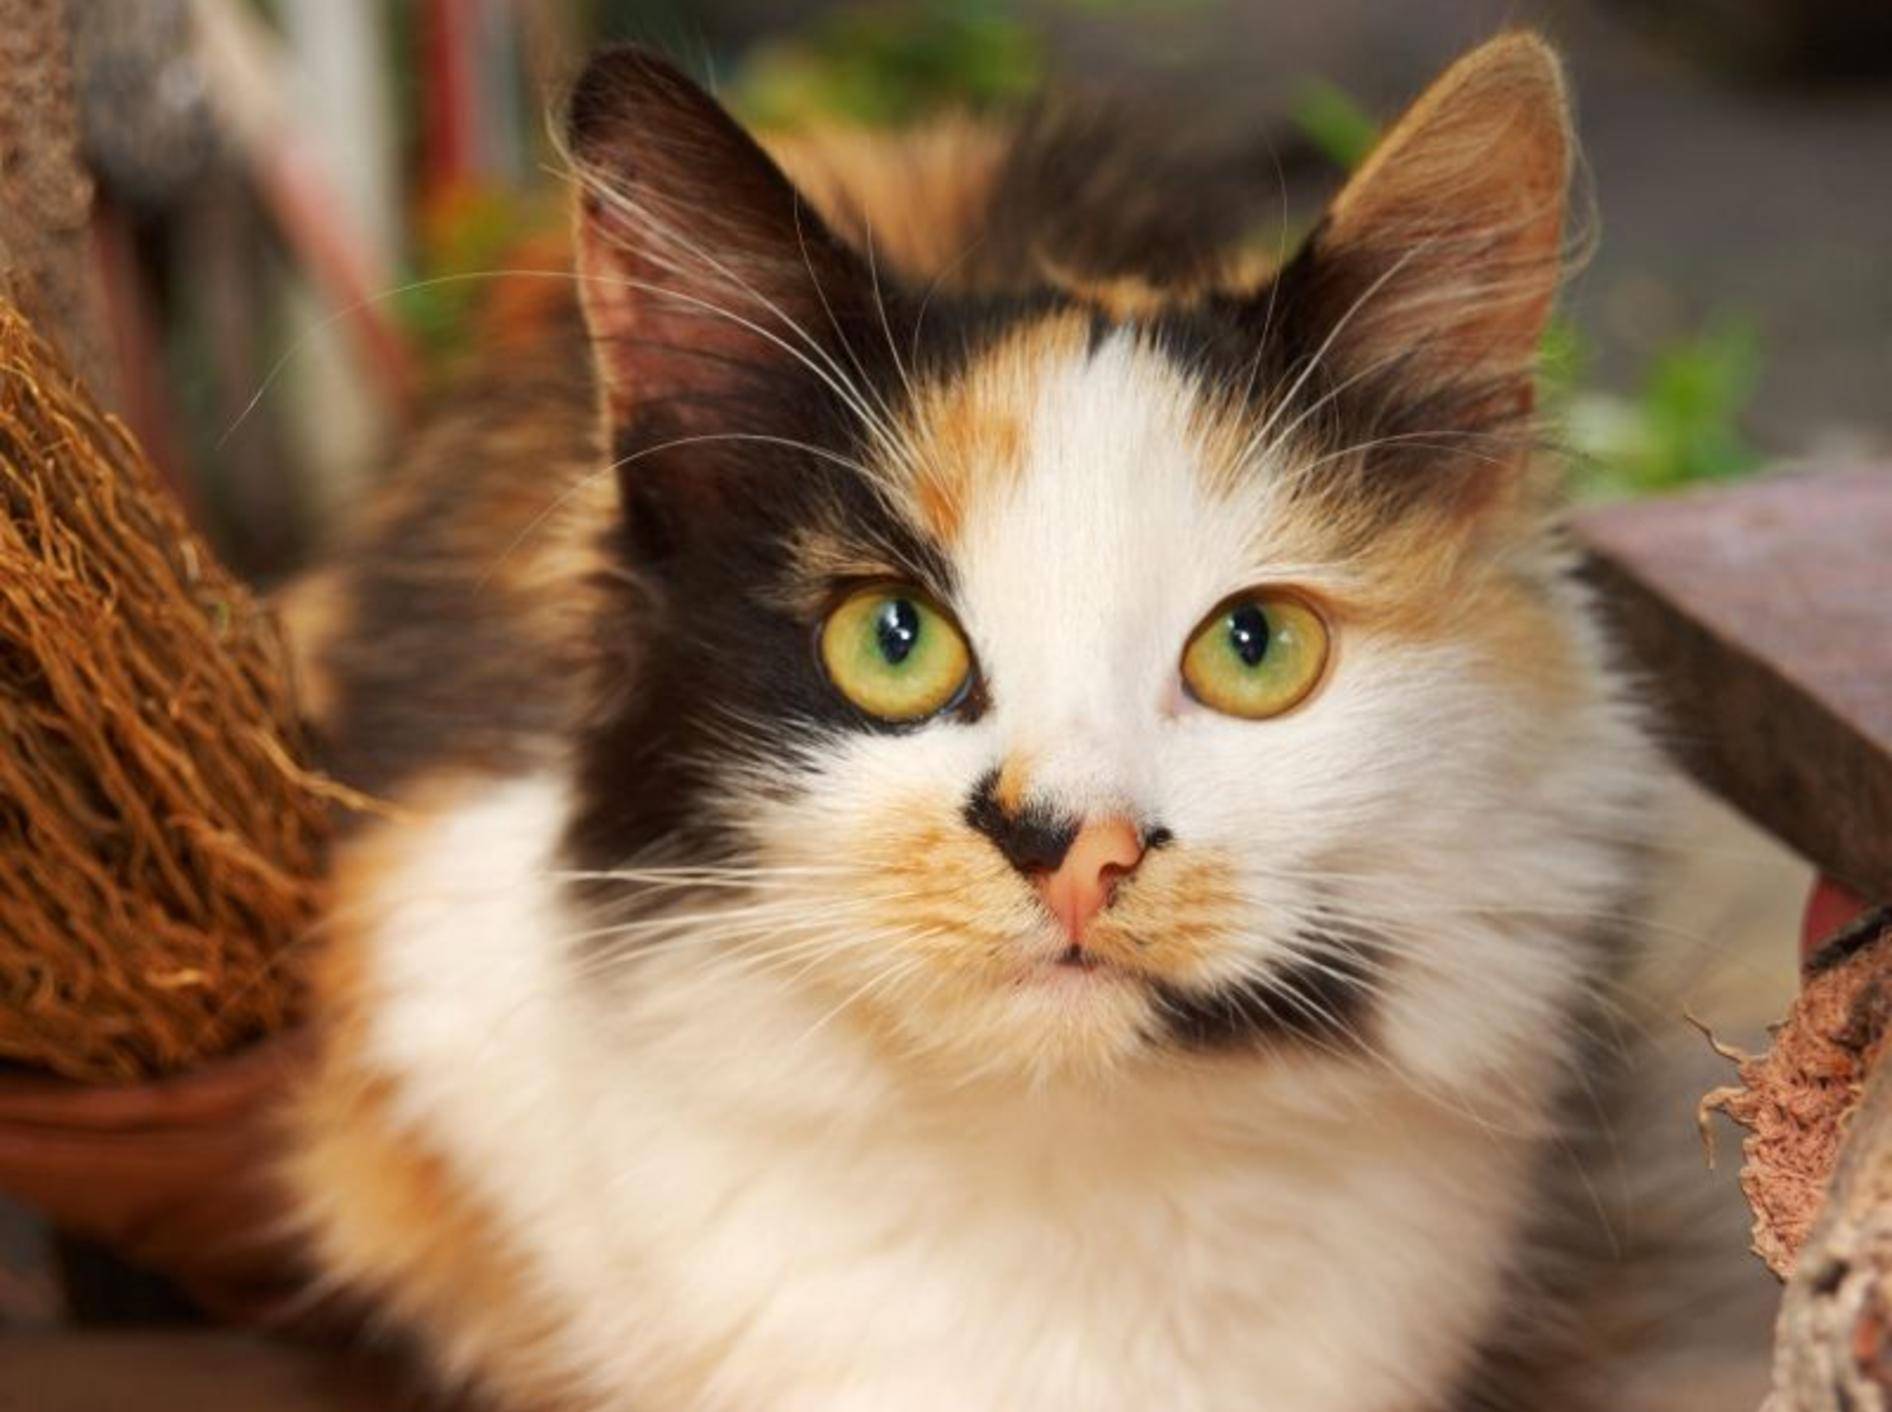 Dreifarbige Katzen haben oft eine besonders schöne Zeichnung — Bild: Shutterstock / Natalia D.